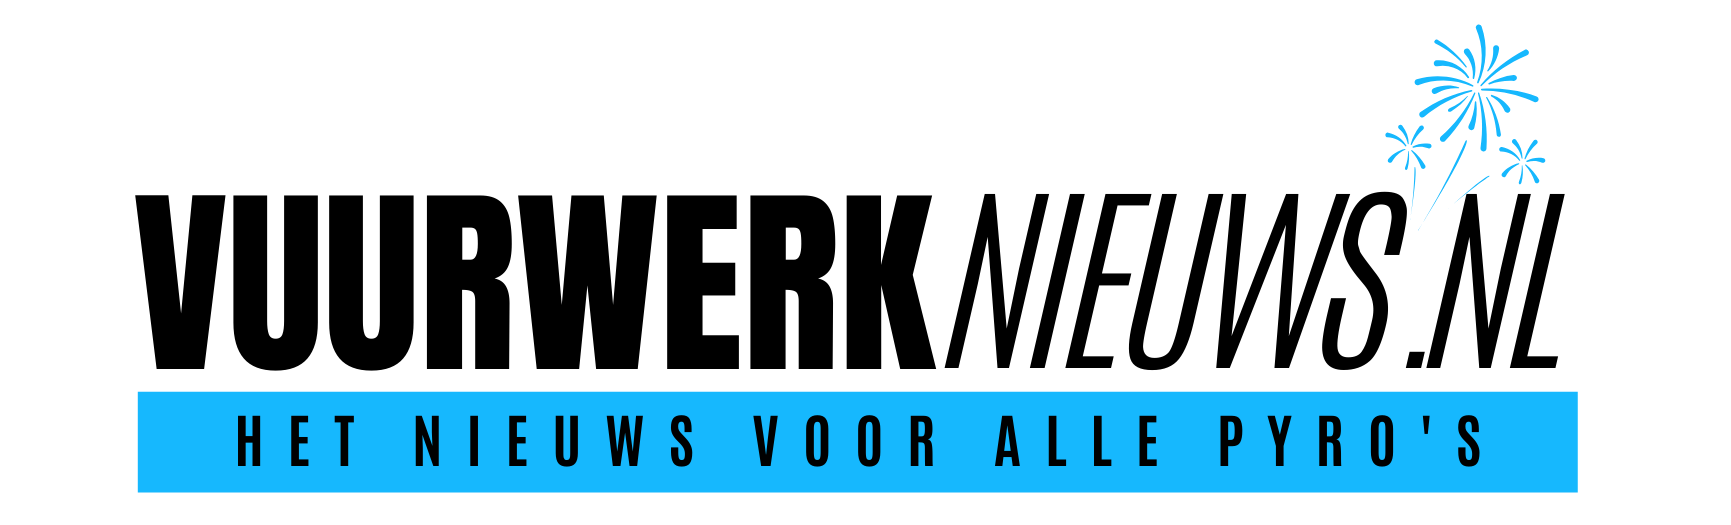 Vuurwerknieuws.nl logo transparant